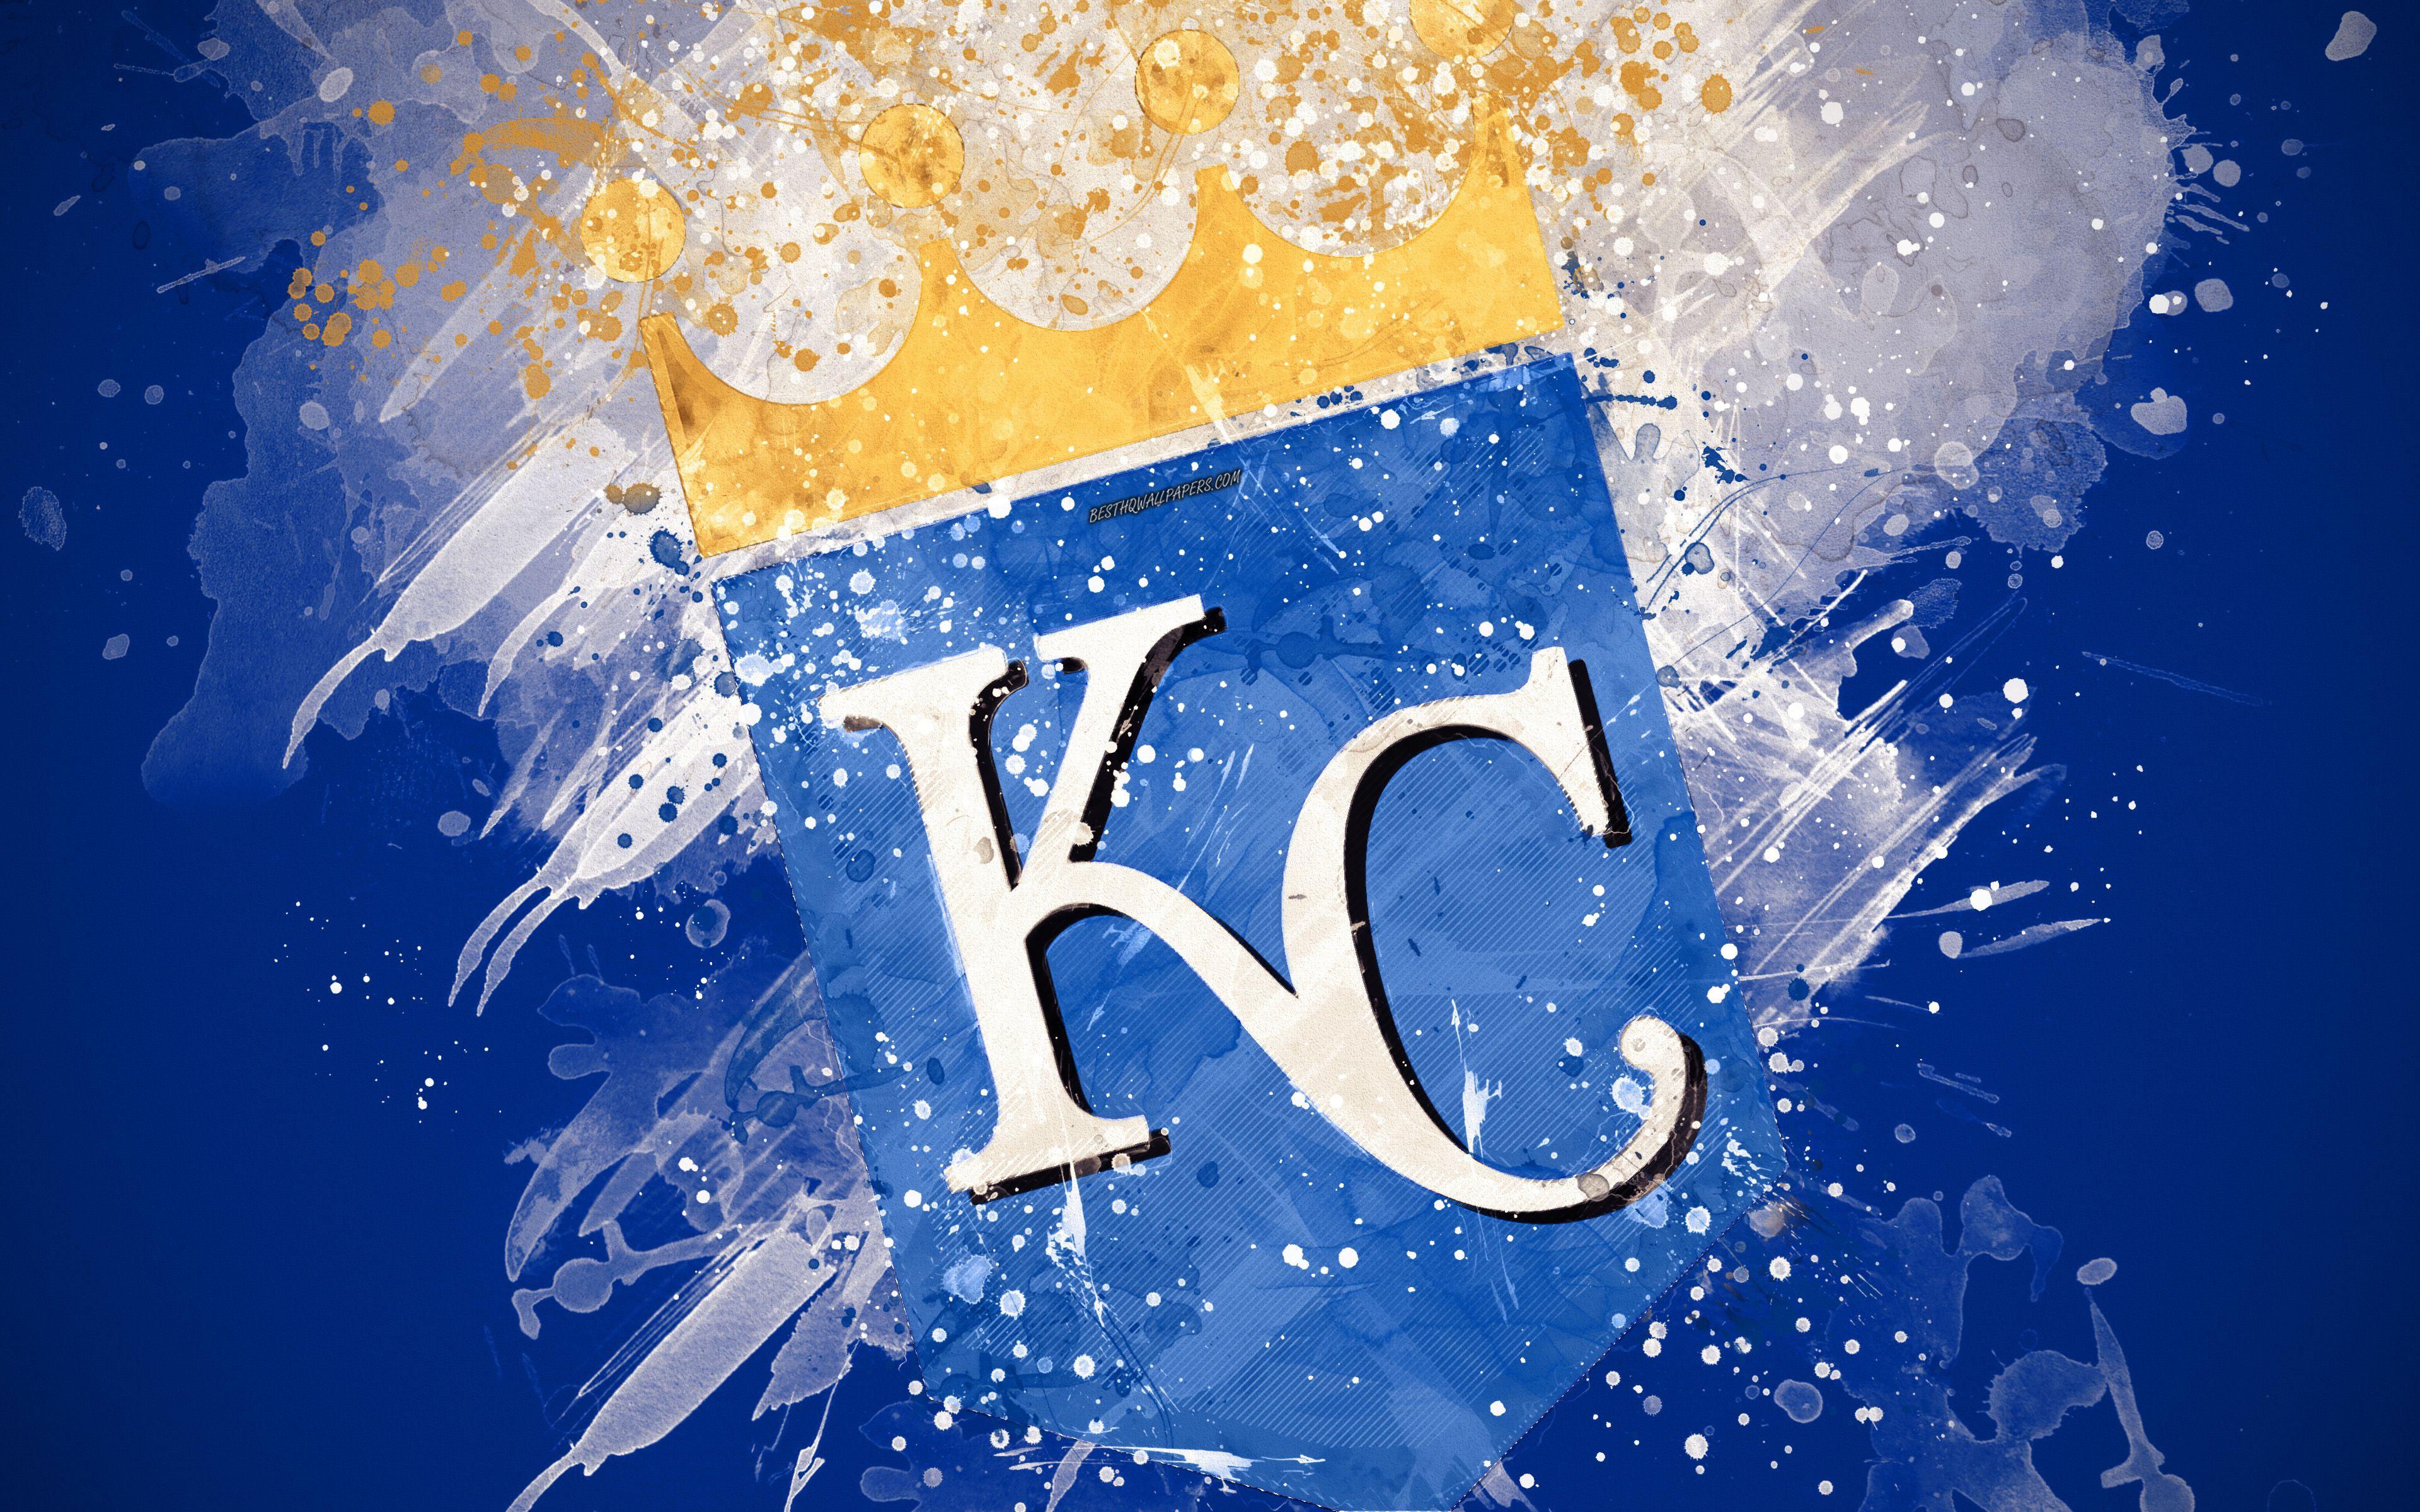 KANSAS CITY ROYALS mlb baseball (16) wallpaper, 1920x1080, 232208